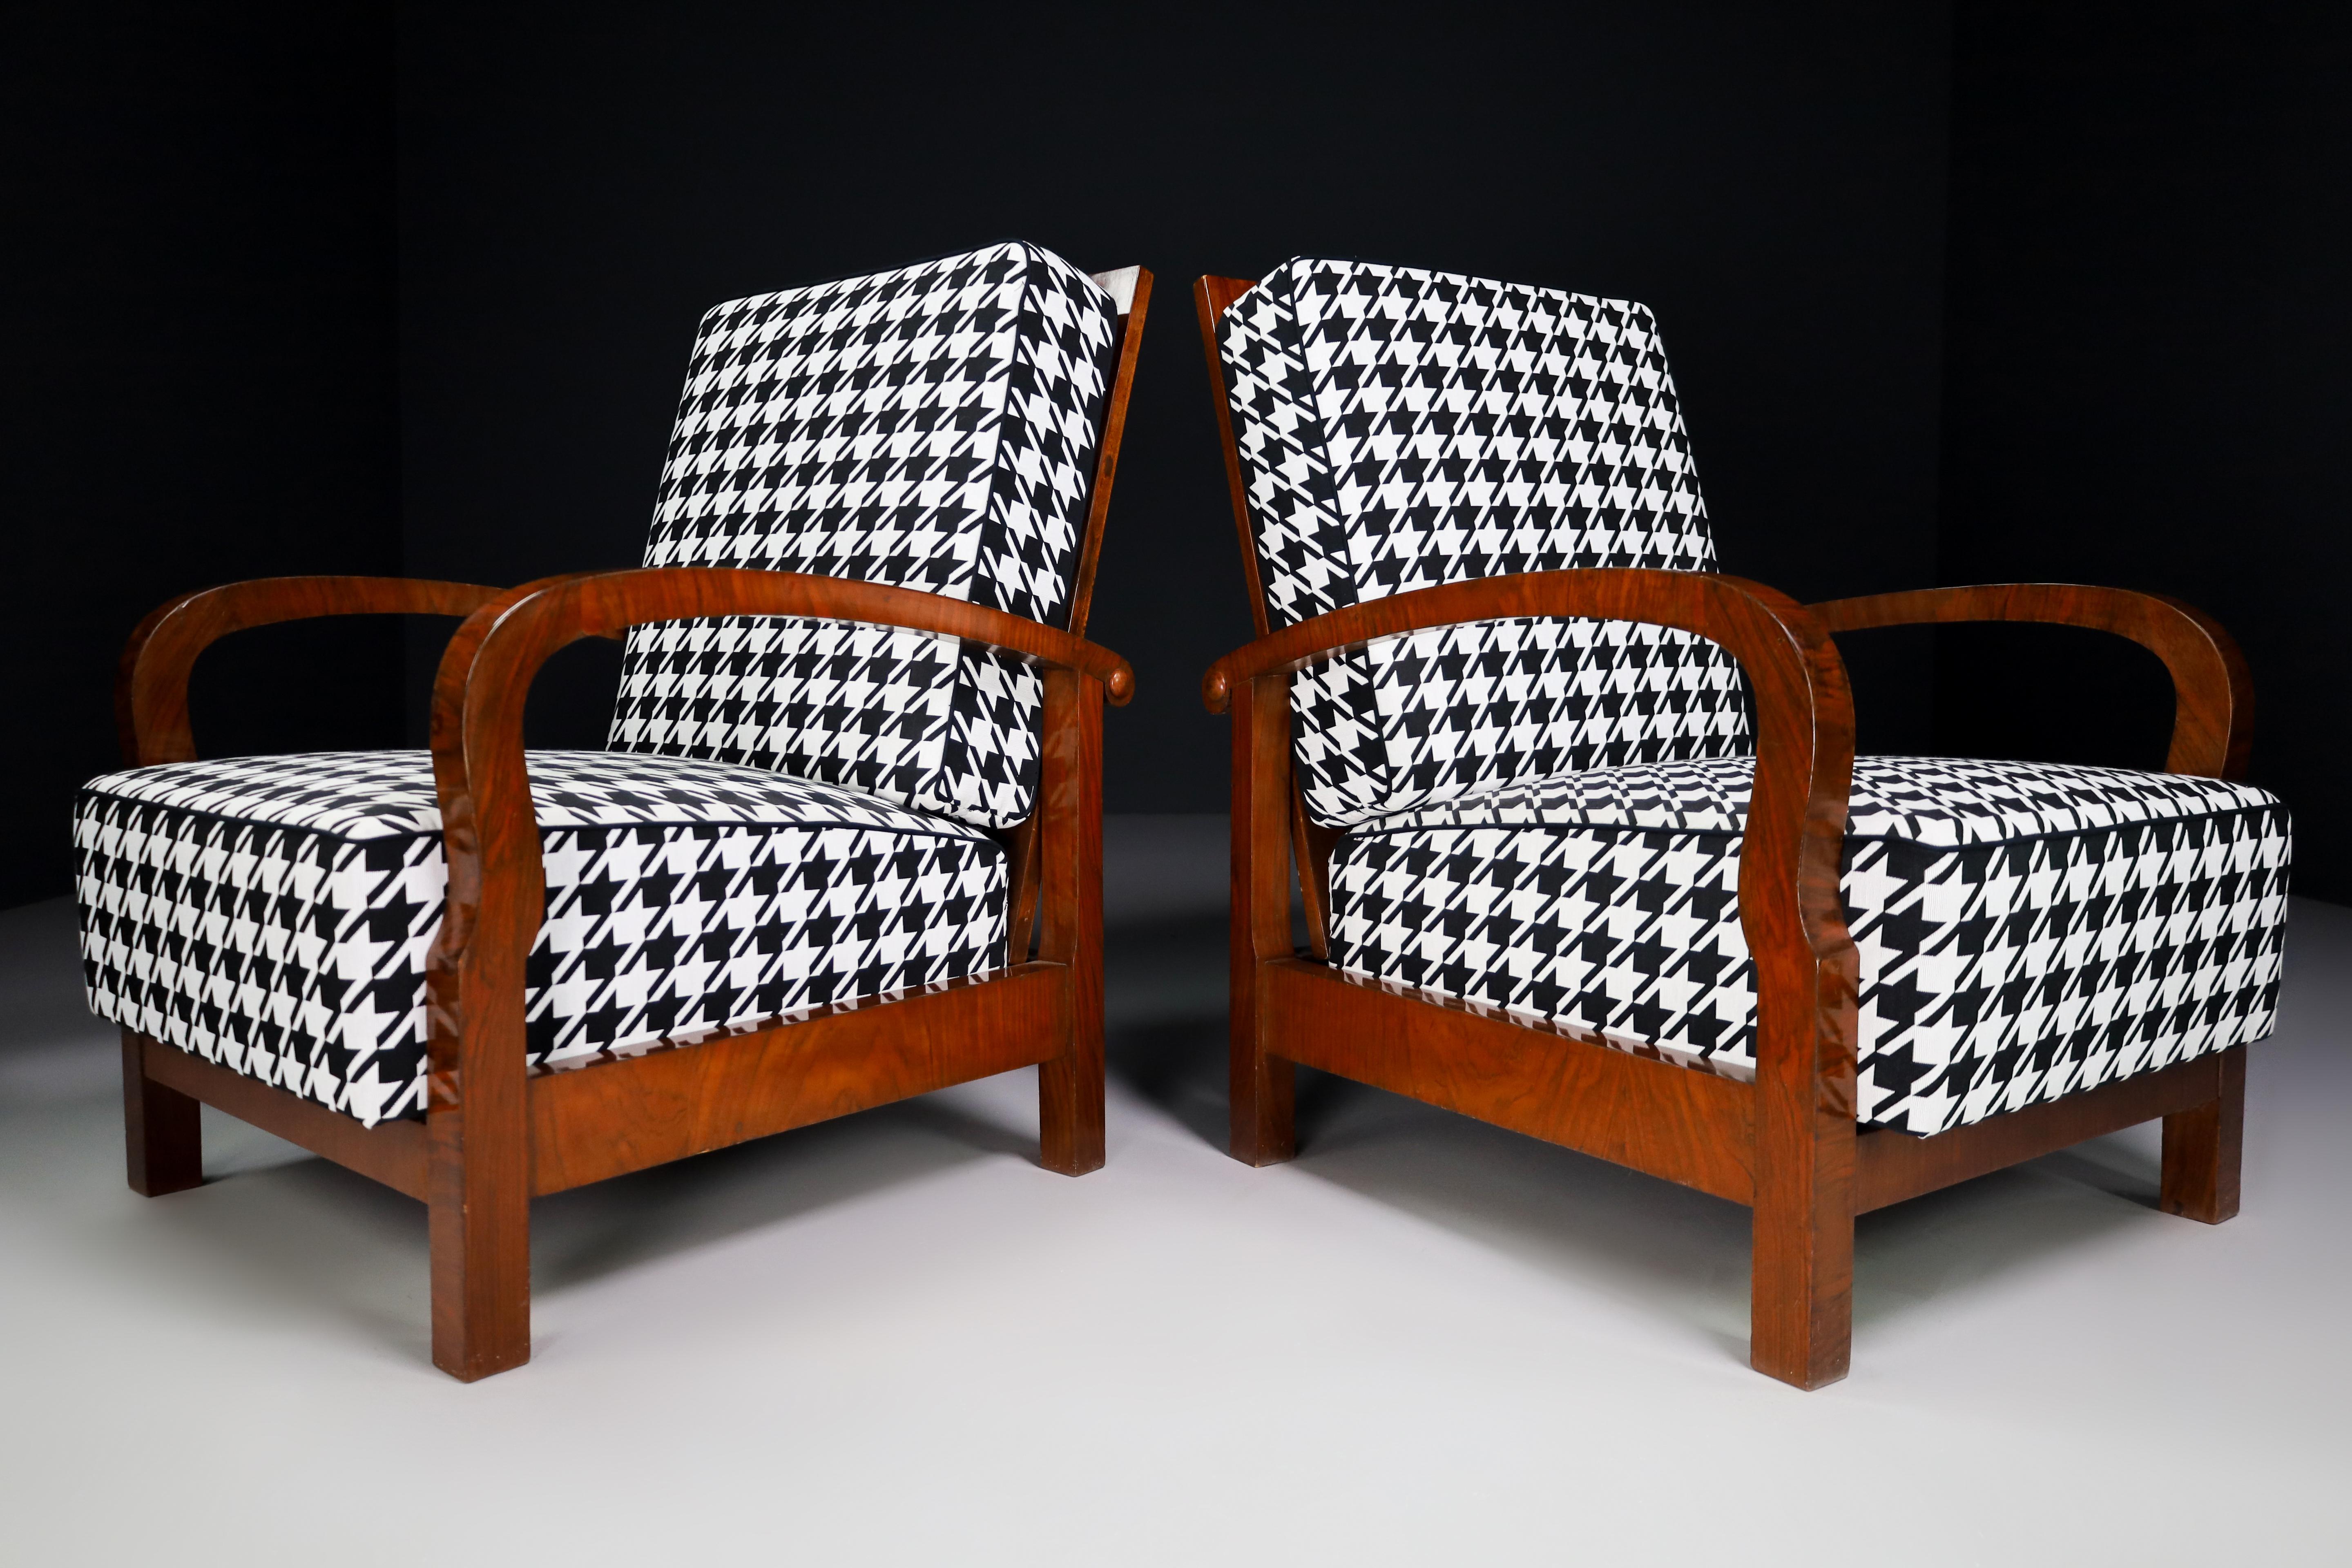 Paire de deux chaises de salon / accoudoirs Art Déco, Bentwood noyer et tissu retapissé, Fabrice 1930s. Ces fauteuils attireront l'attention dans n'importe quel intérieur, qu'il s'agisse d'un salon, d'une salle familiale, d'une salle de projection